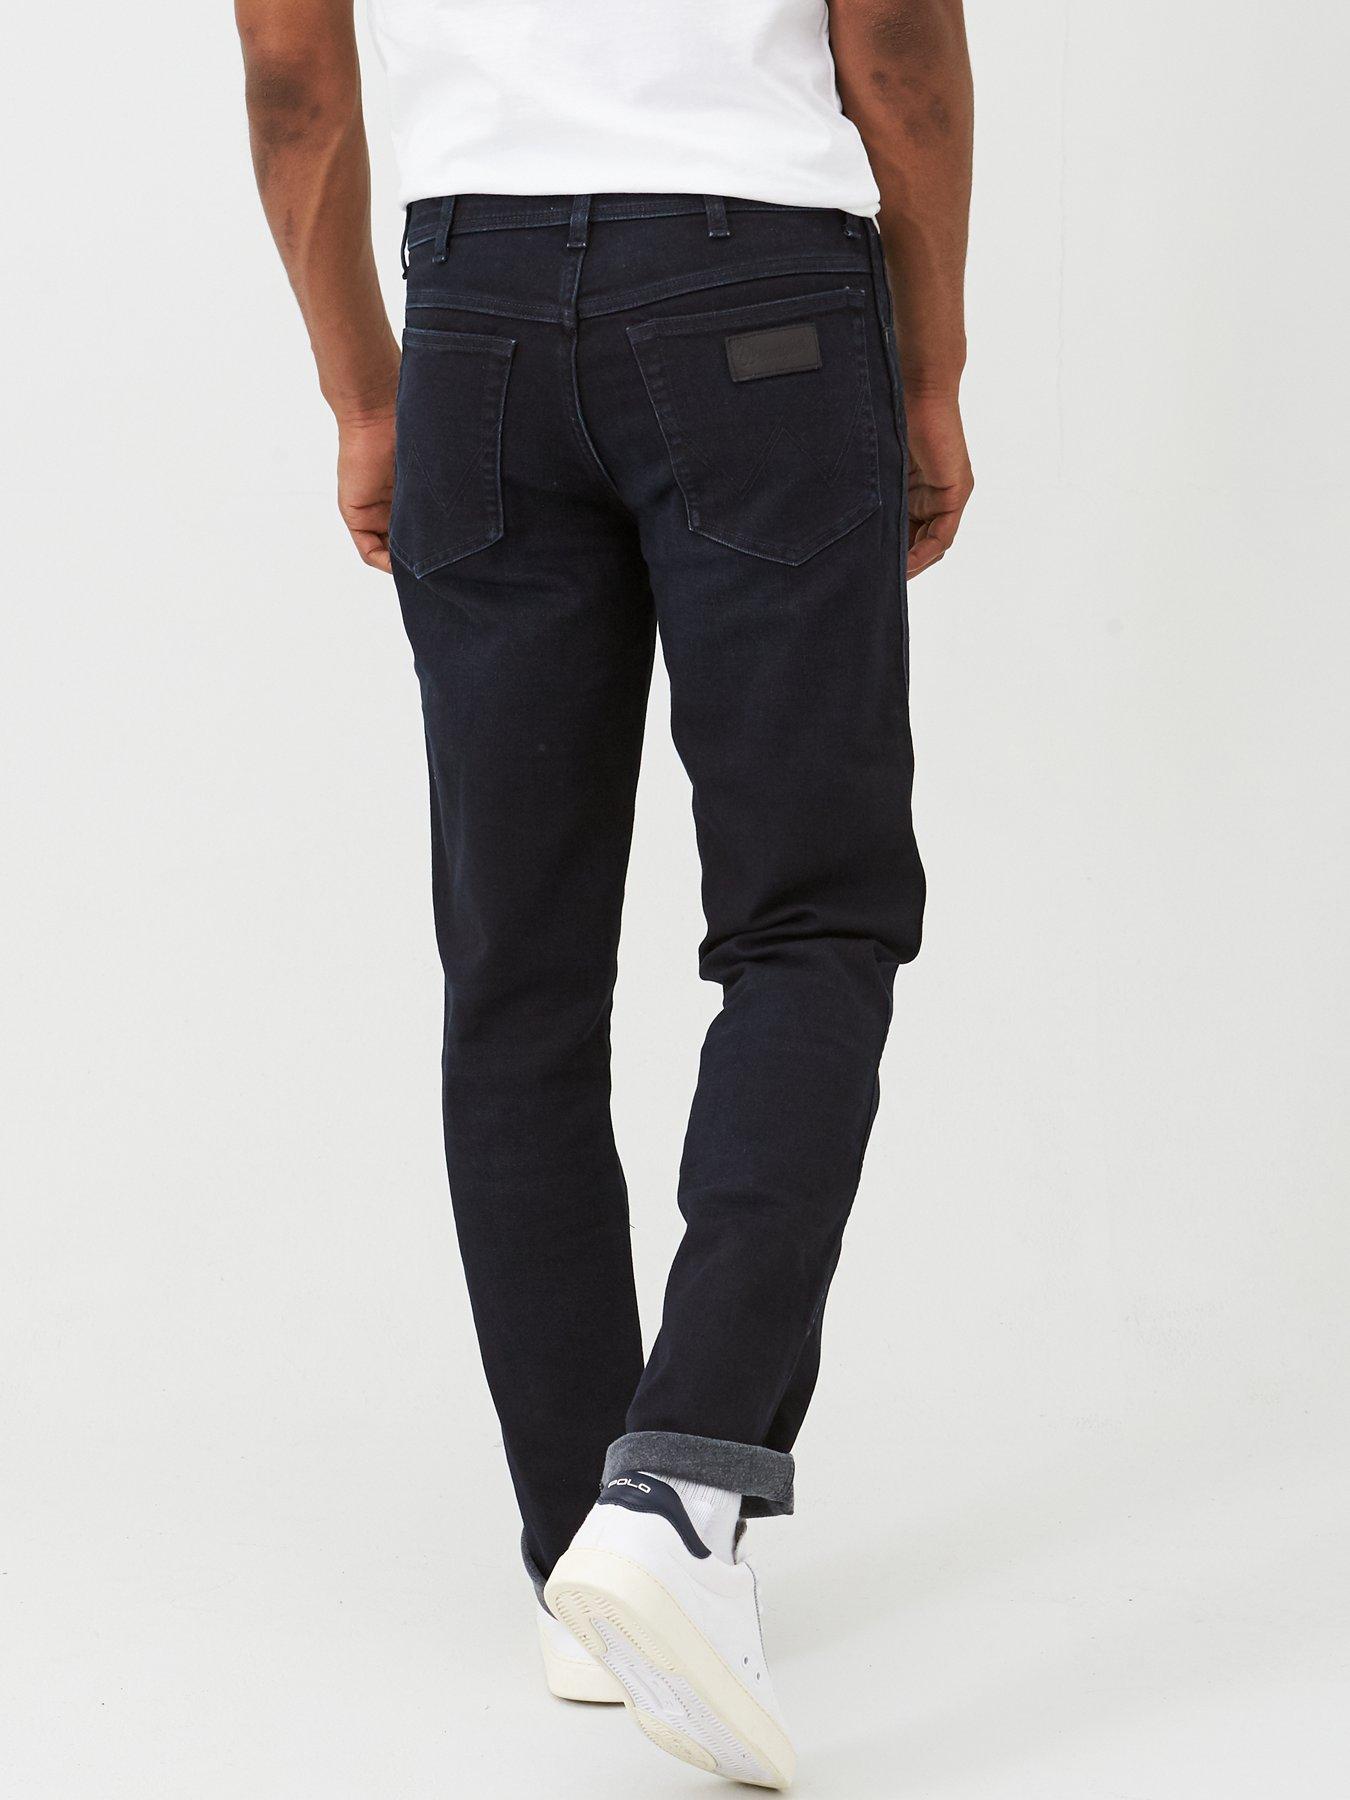 wrangler texas original straight jeans